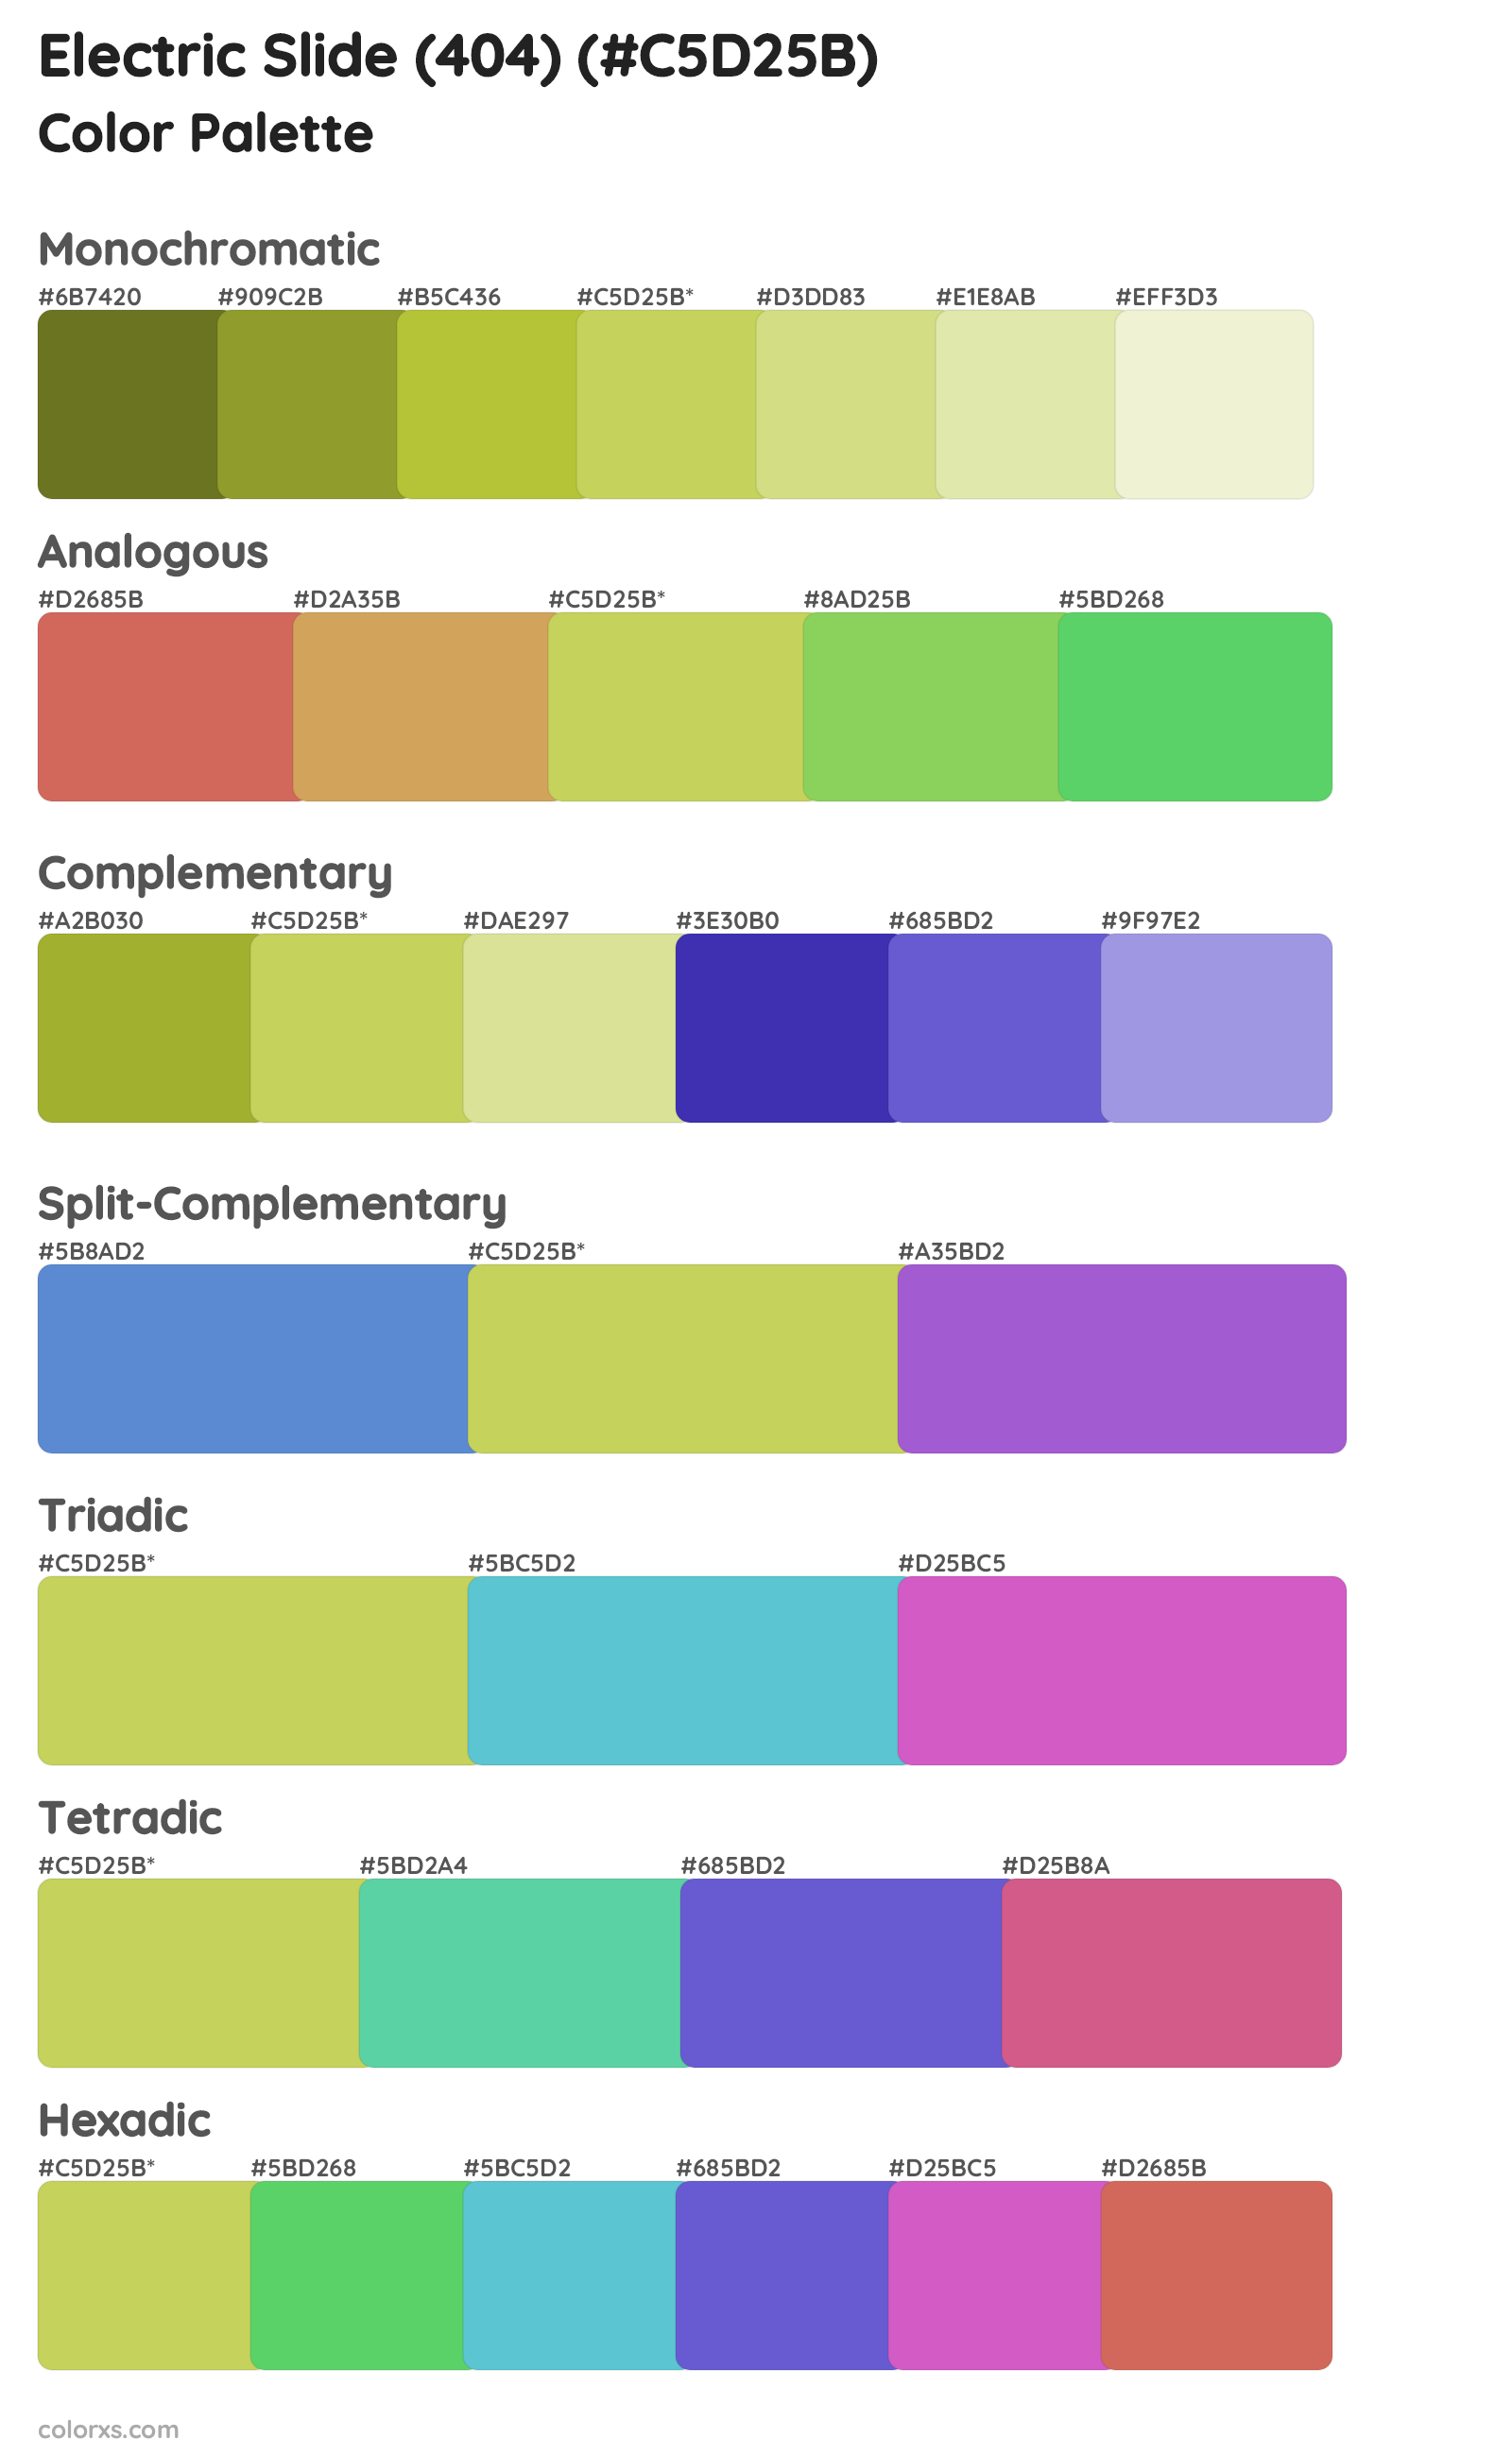 Electric Slide (404) Color Scheme Palettes